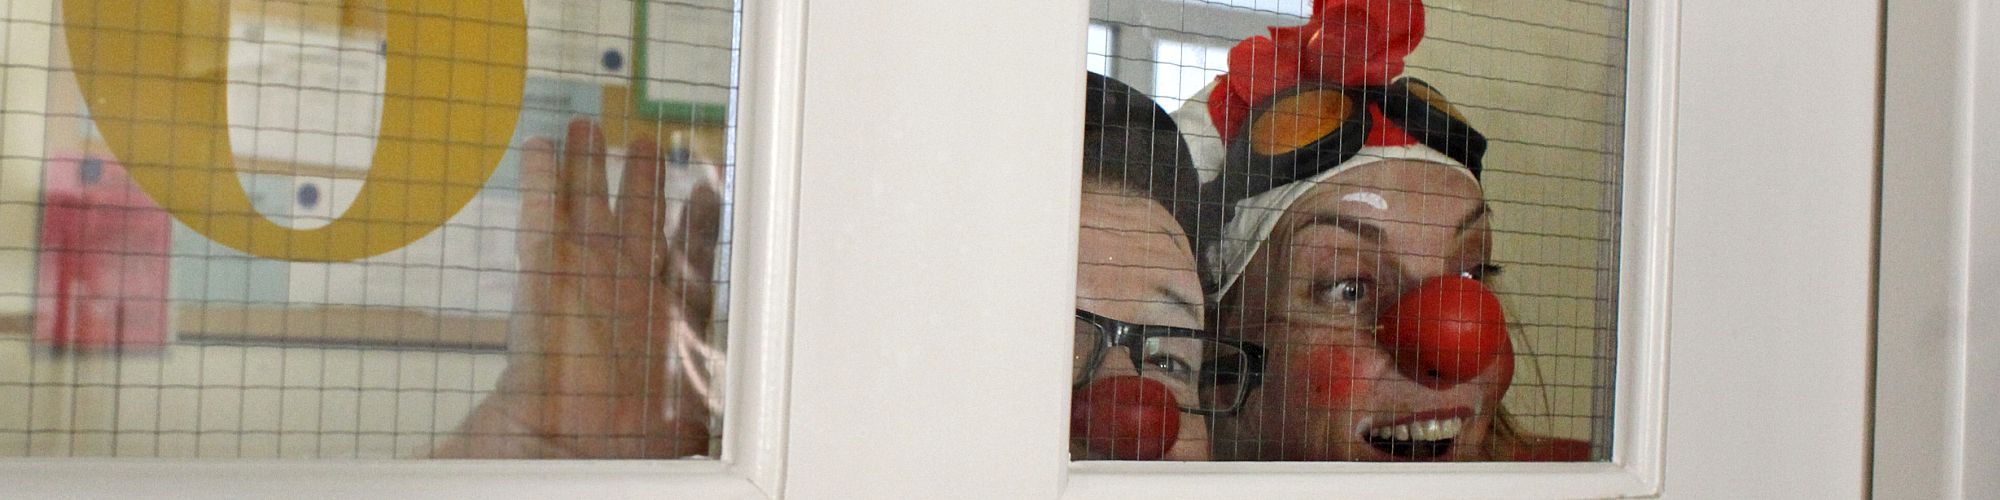 KlinikClowns schauen durch Krankenhausfenster